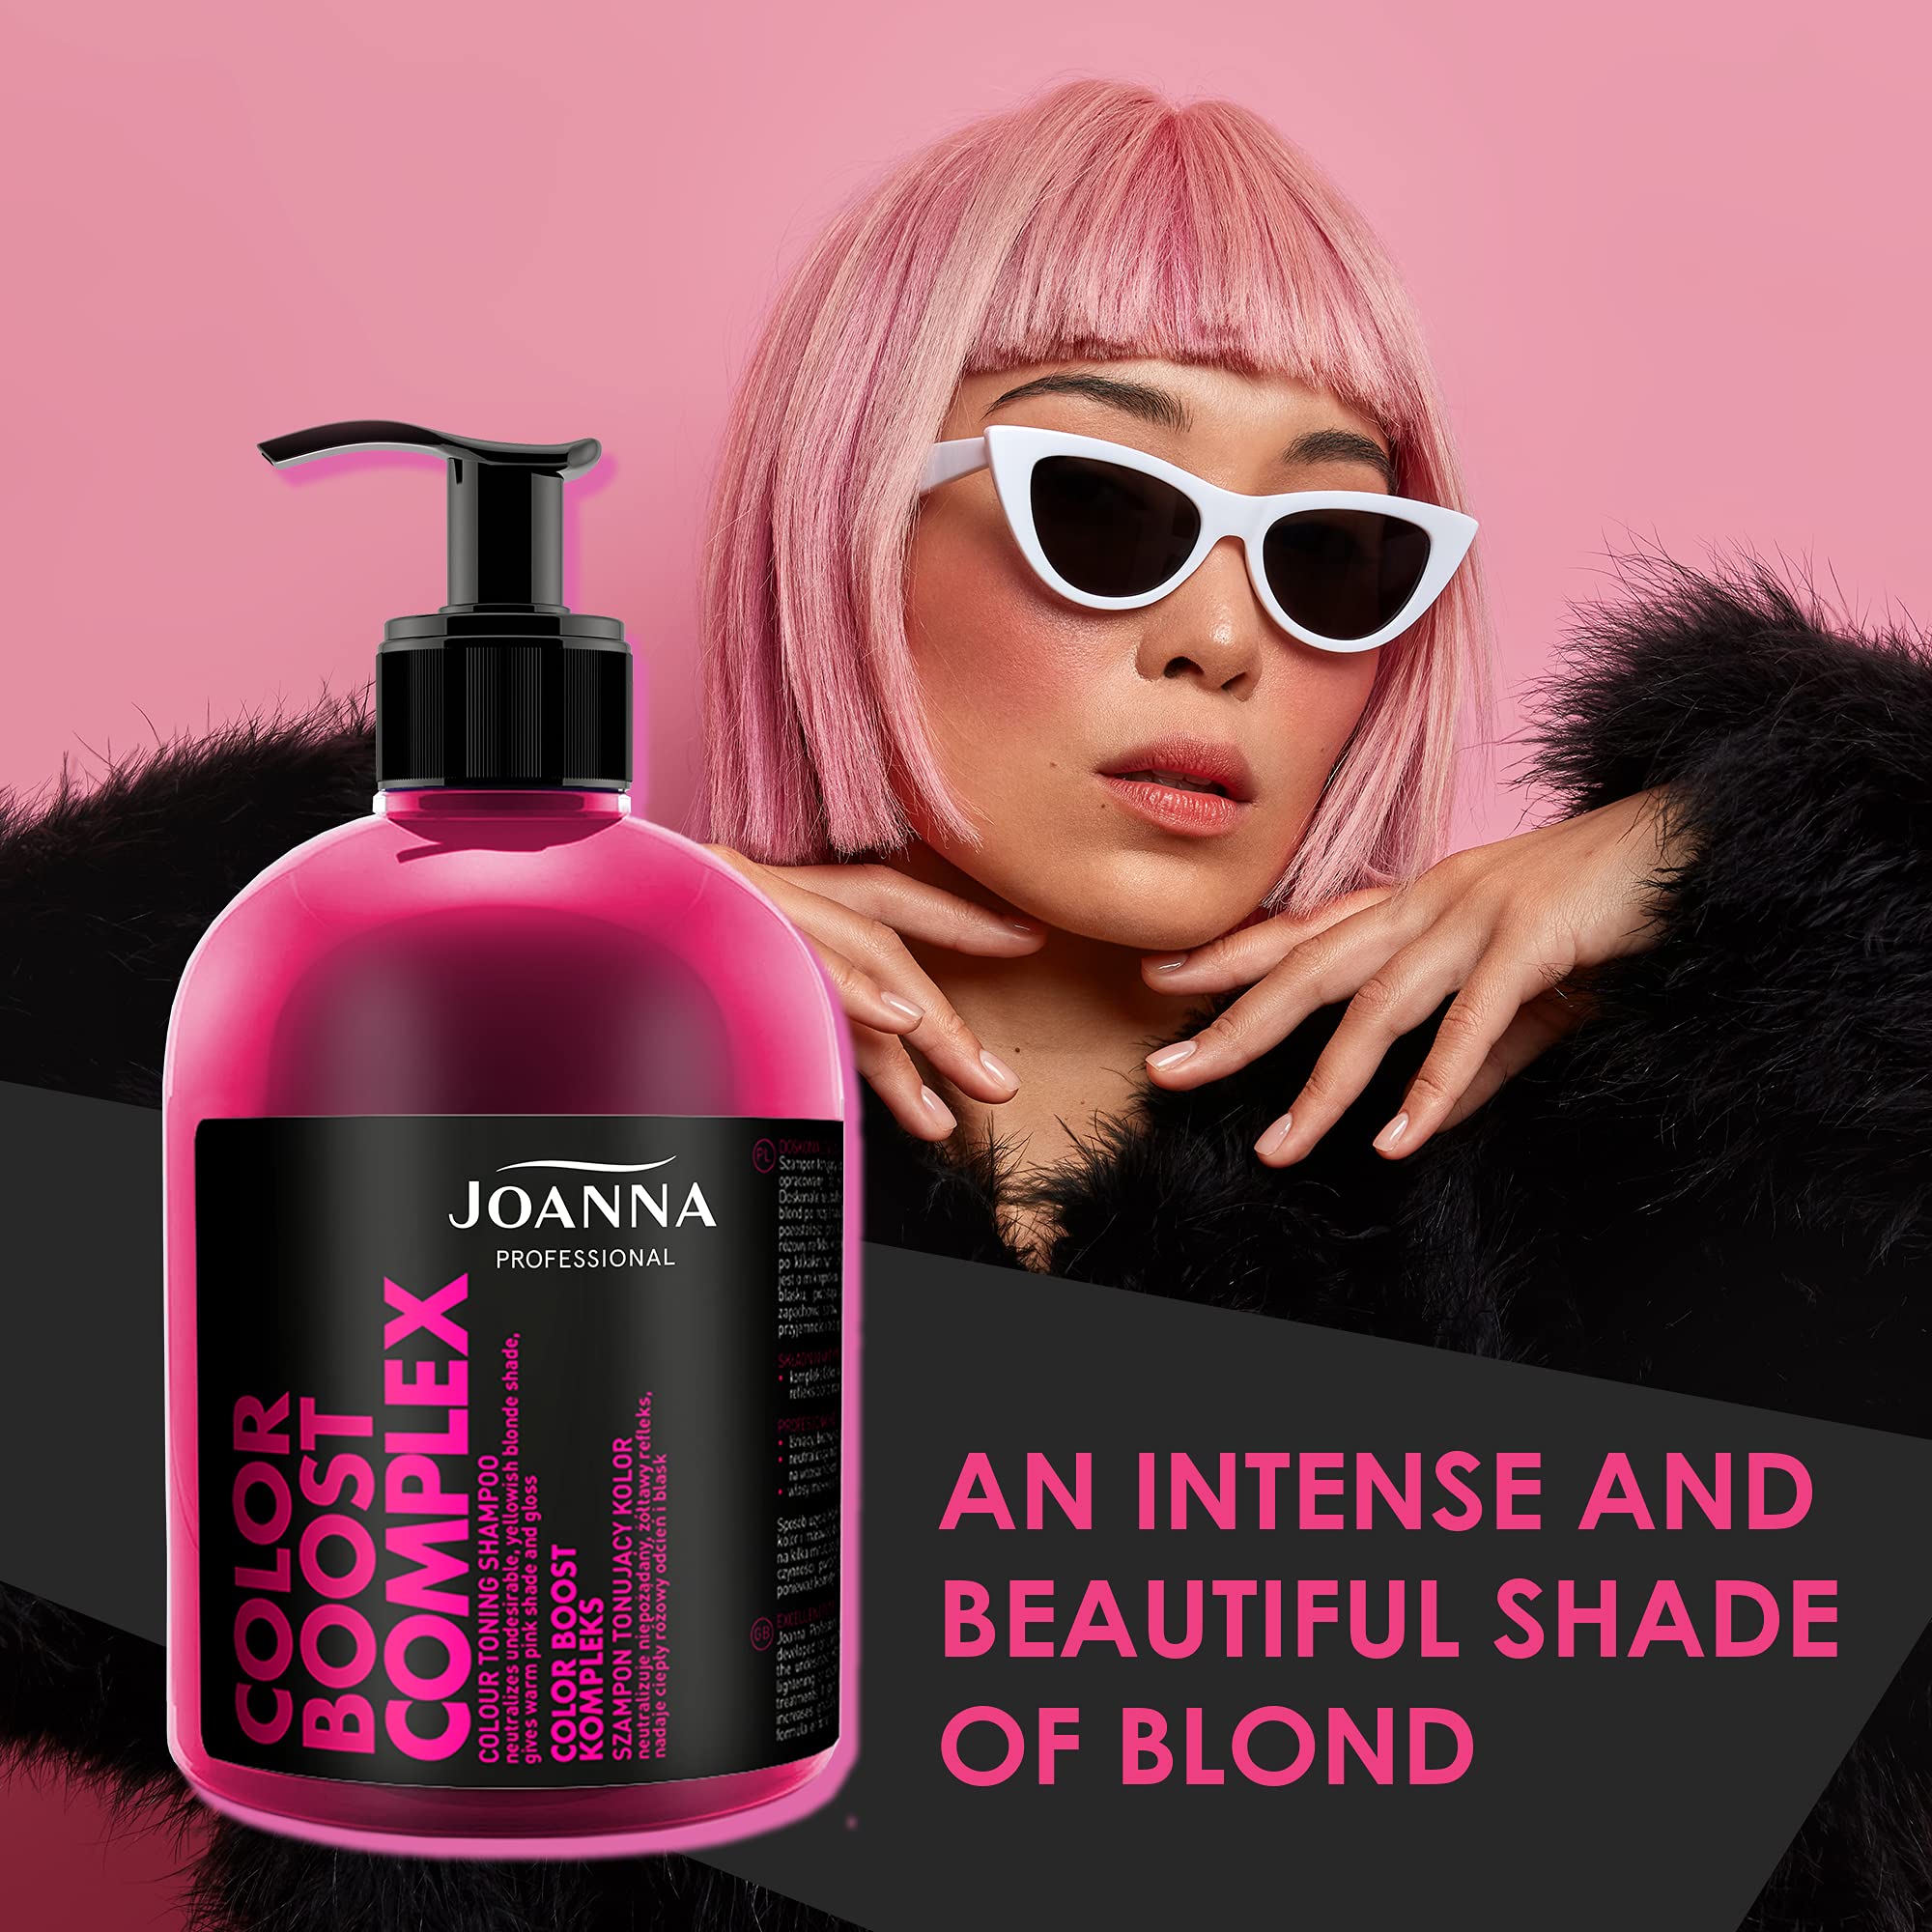 szampon z joanny rozowy